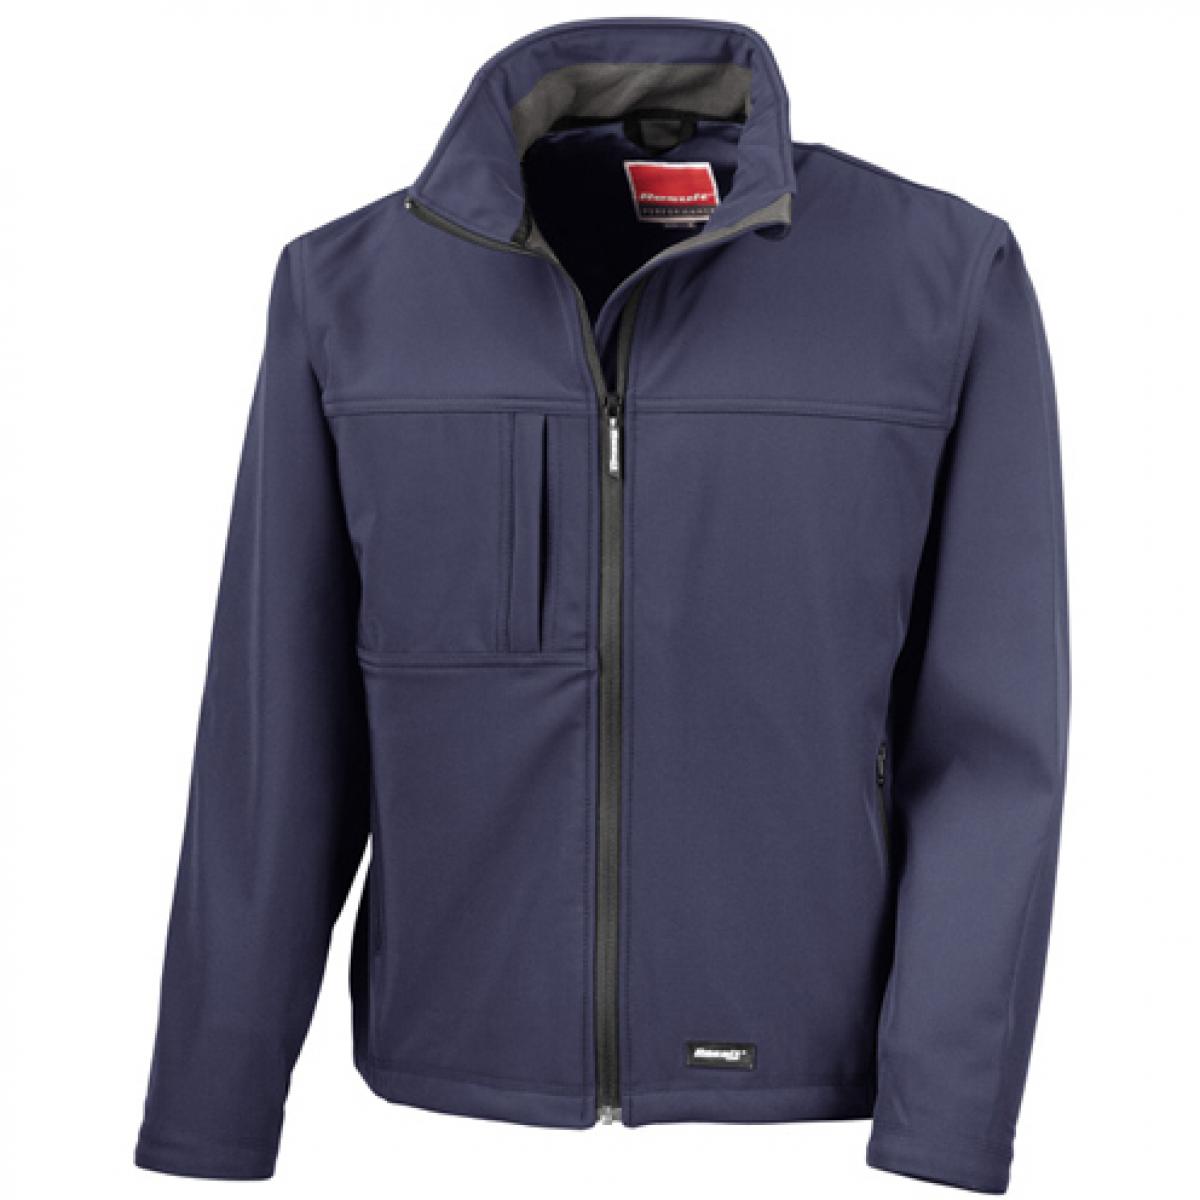 Hersteller: Result Herstellernummer: R121M Artikelbezeichnung: Classic Soft Shell Jacket Farbe: Navy